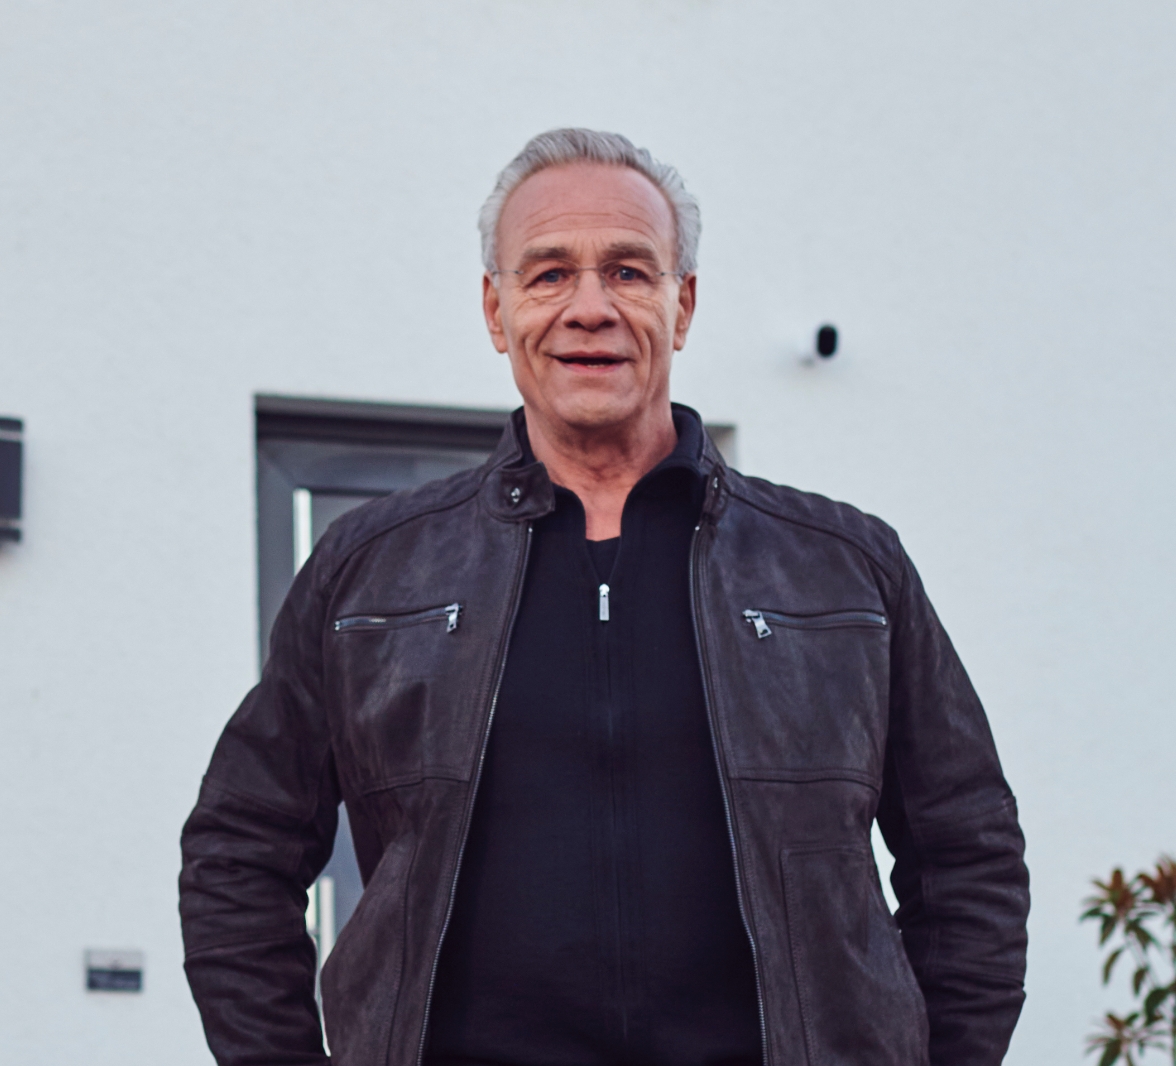 Klaus J. Behrendt, Schauspieler und TV-Kommissar, steht vor einem Haus mit einer Arlo Sicherheitskamera im Hintergrund